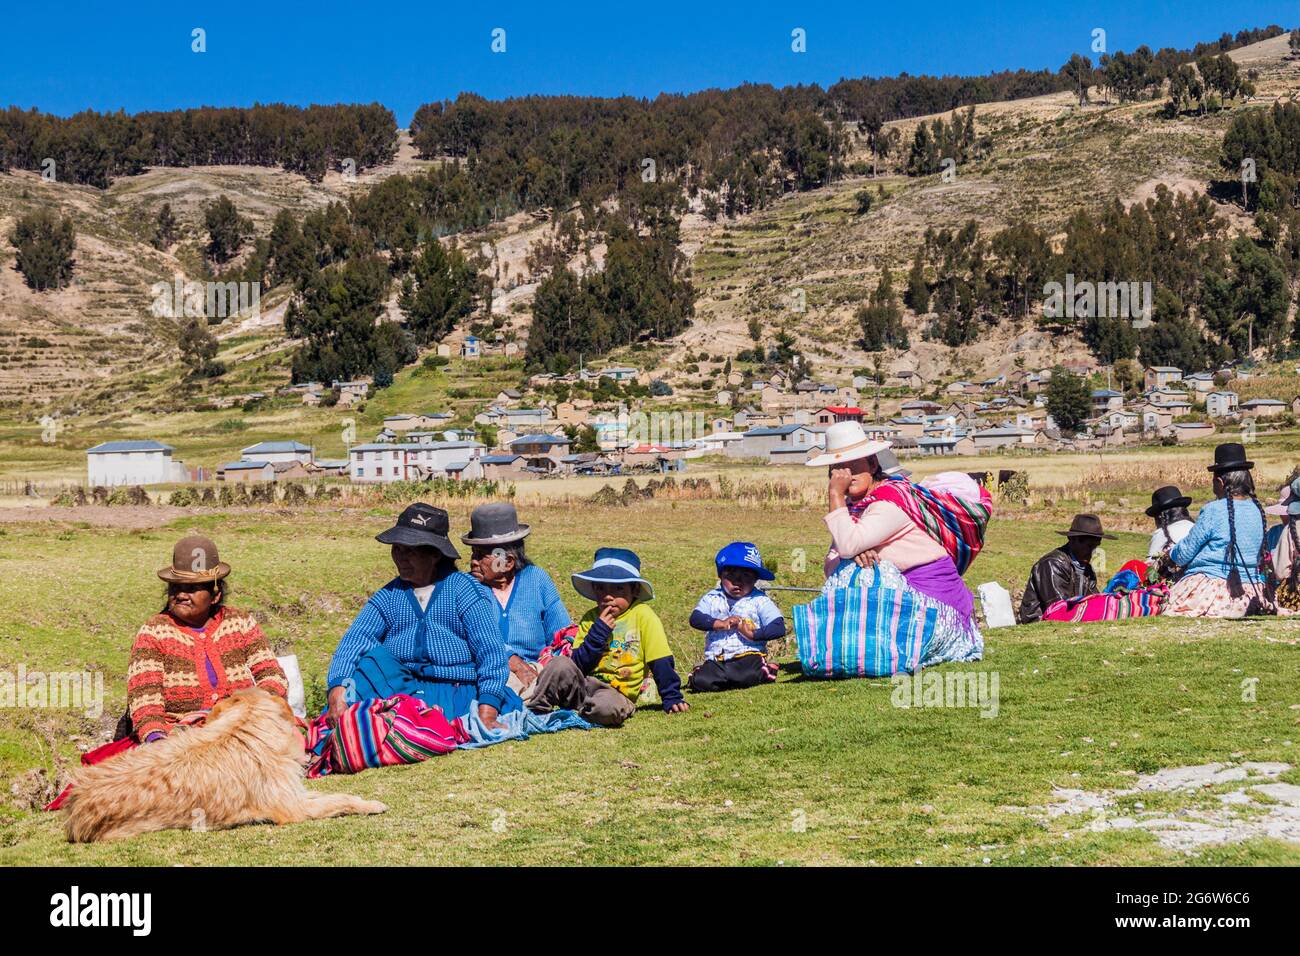 ISLA DEL Sol, BOLIVIA - 12 MAGGIO 2015: Donne indigene locali nel villaggio di Challa sull'Isla del Sol (Isola del Sole) nel lago Titicaca, Bolivia Foto Stock